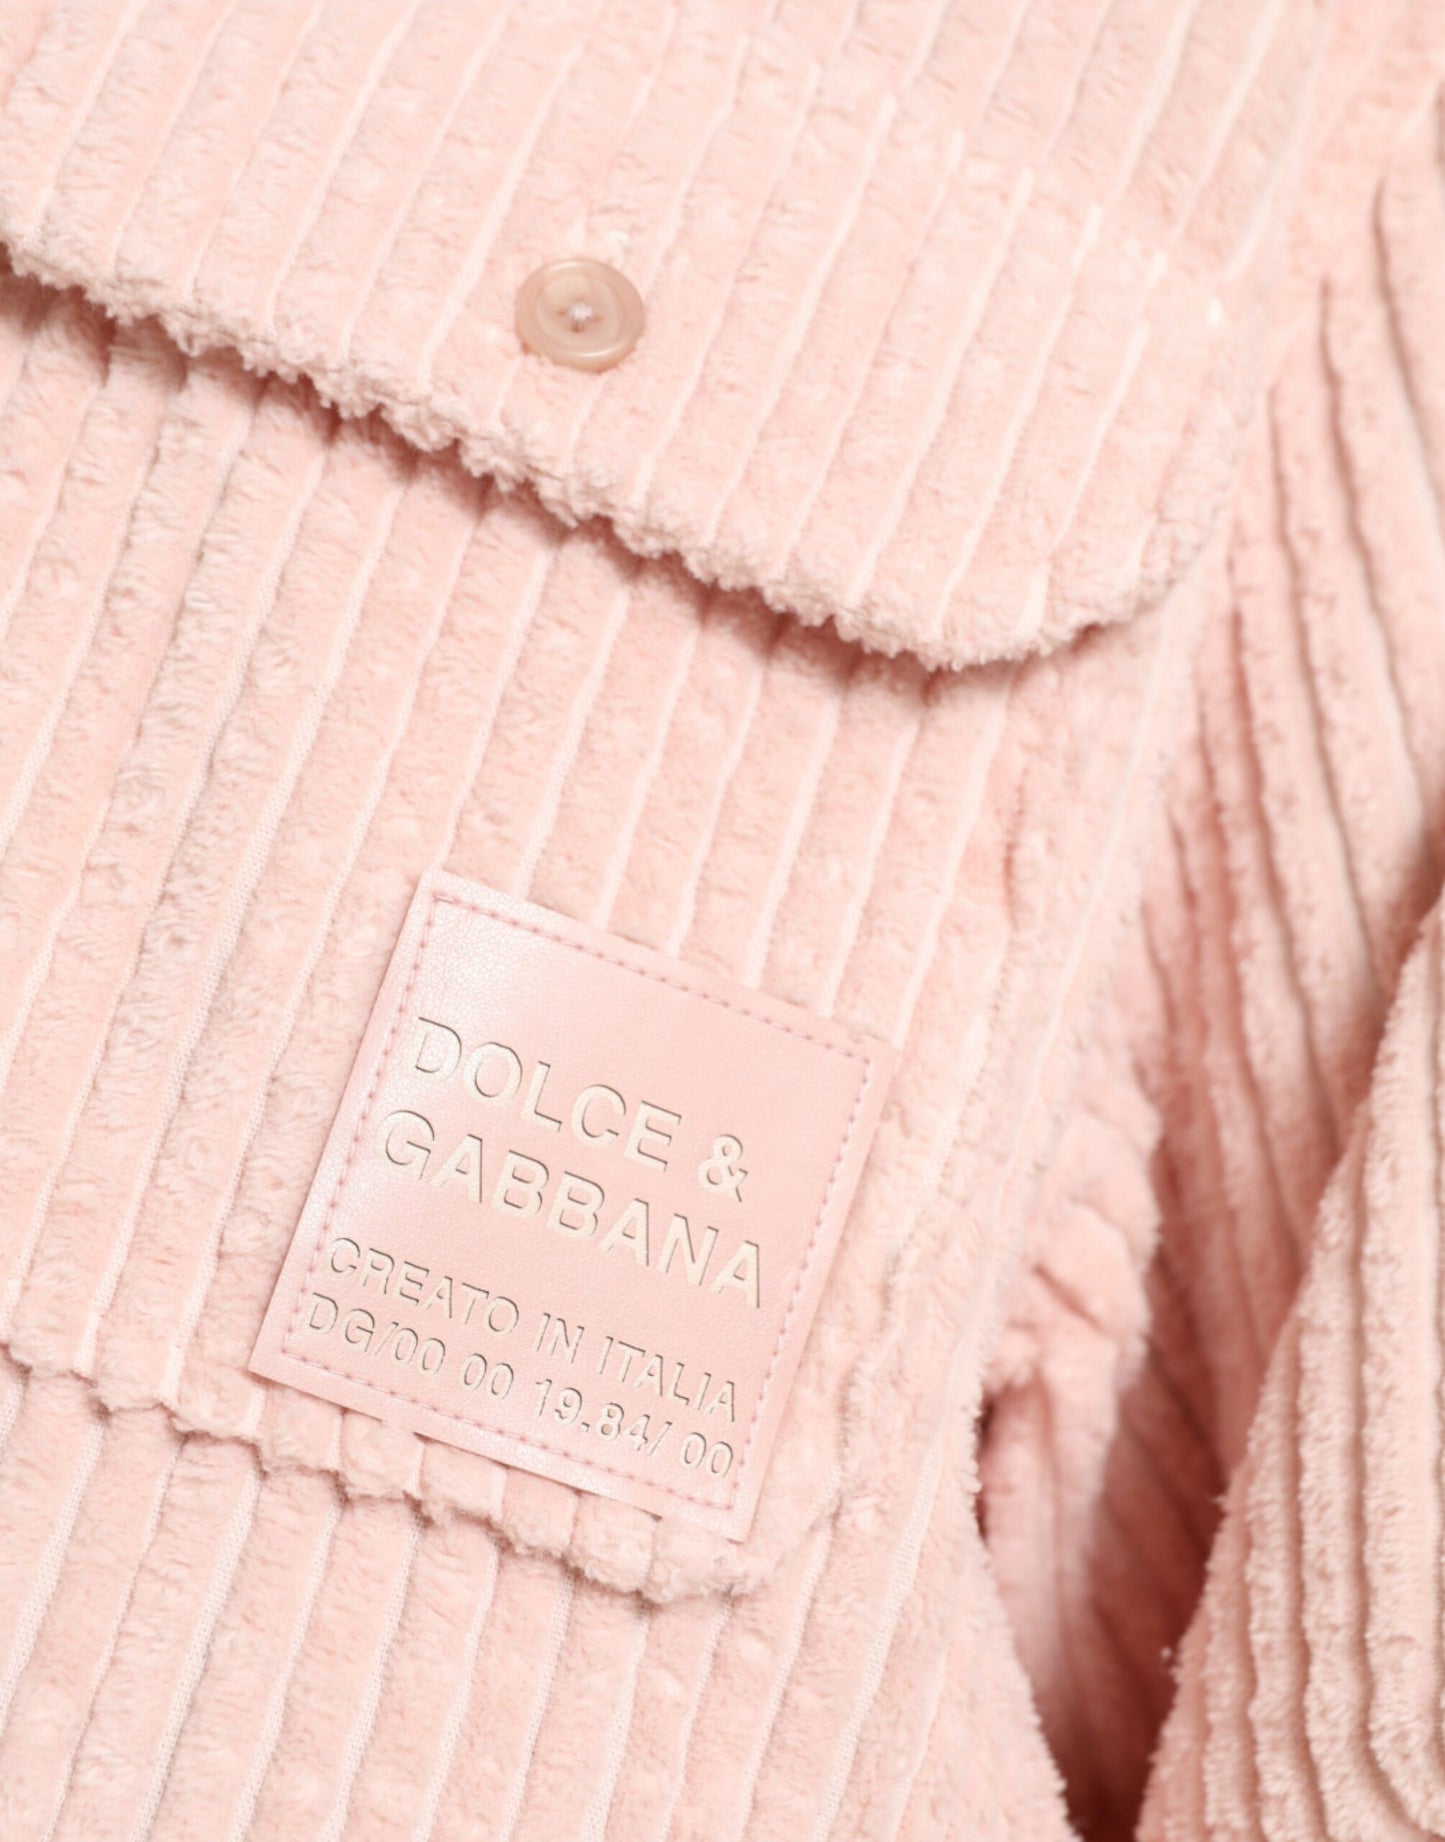 Elegant Cotton Shirt Sweater in Pink